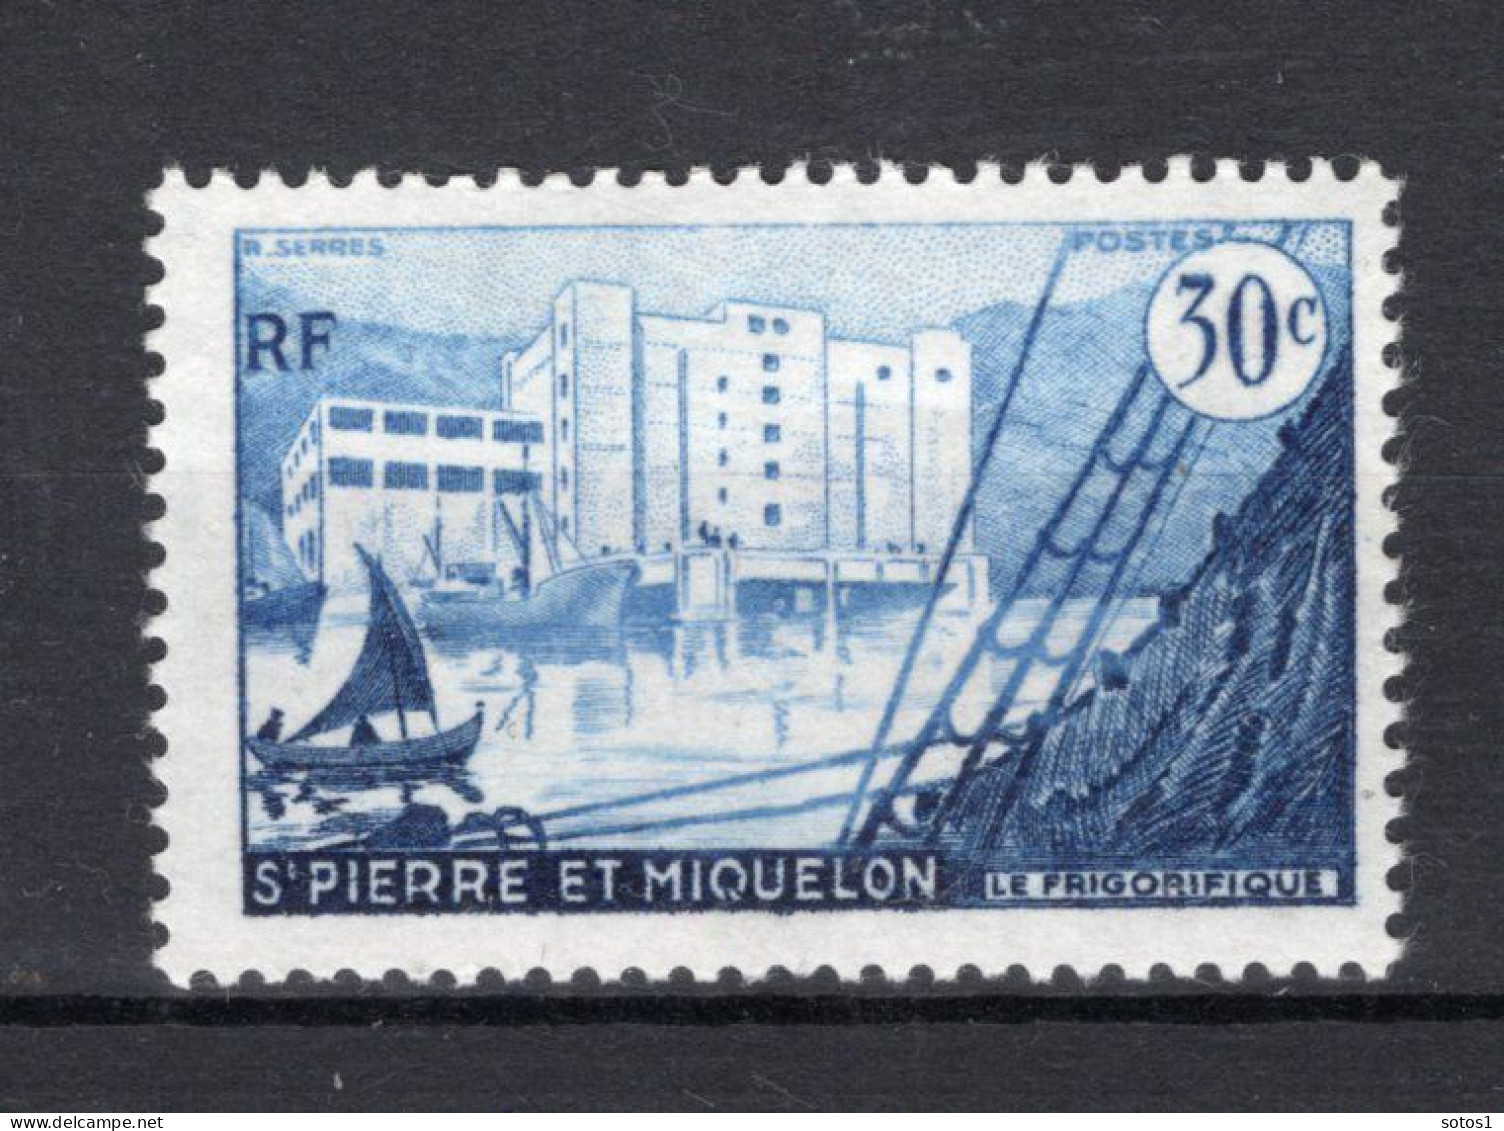 SAINT PIERRE - MIQUELON Yt. 348 MNH 1955-1956 - Neufs